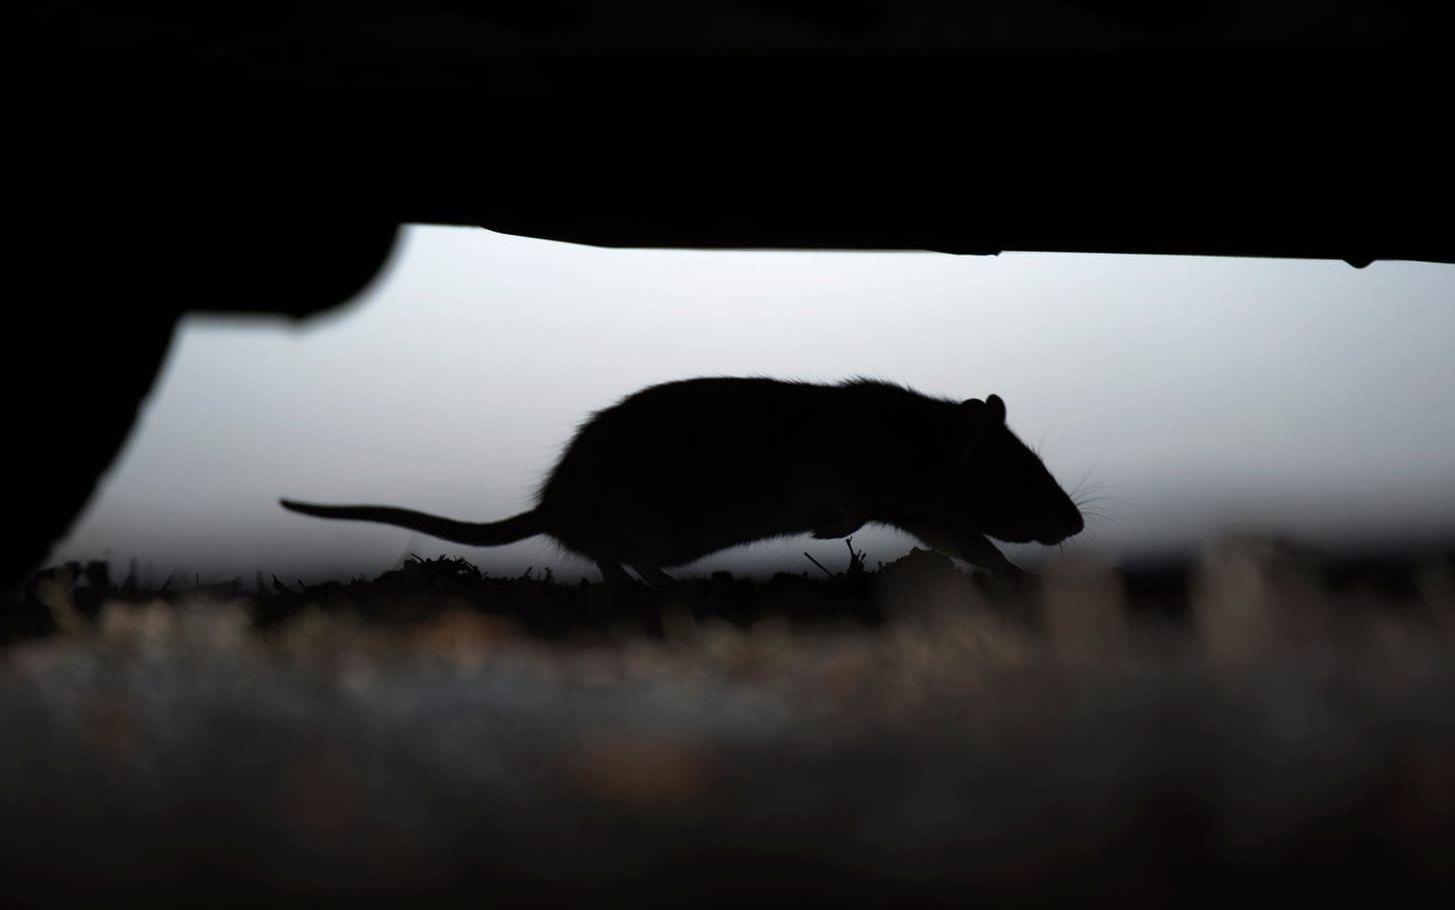 När livsmedelsinspektörer gjorde ett oanmält besök på en restaurang i Trollhättan hittade de en levande råtta. Bild: Fredrik Sandberg